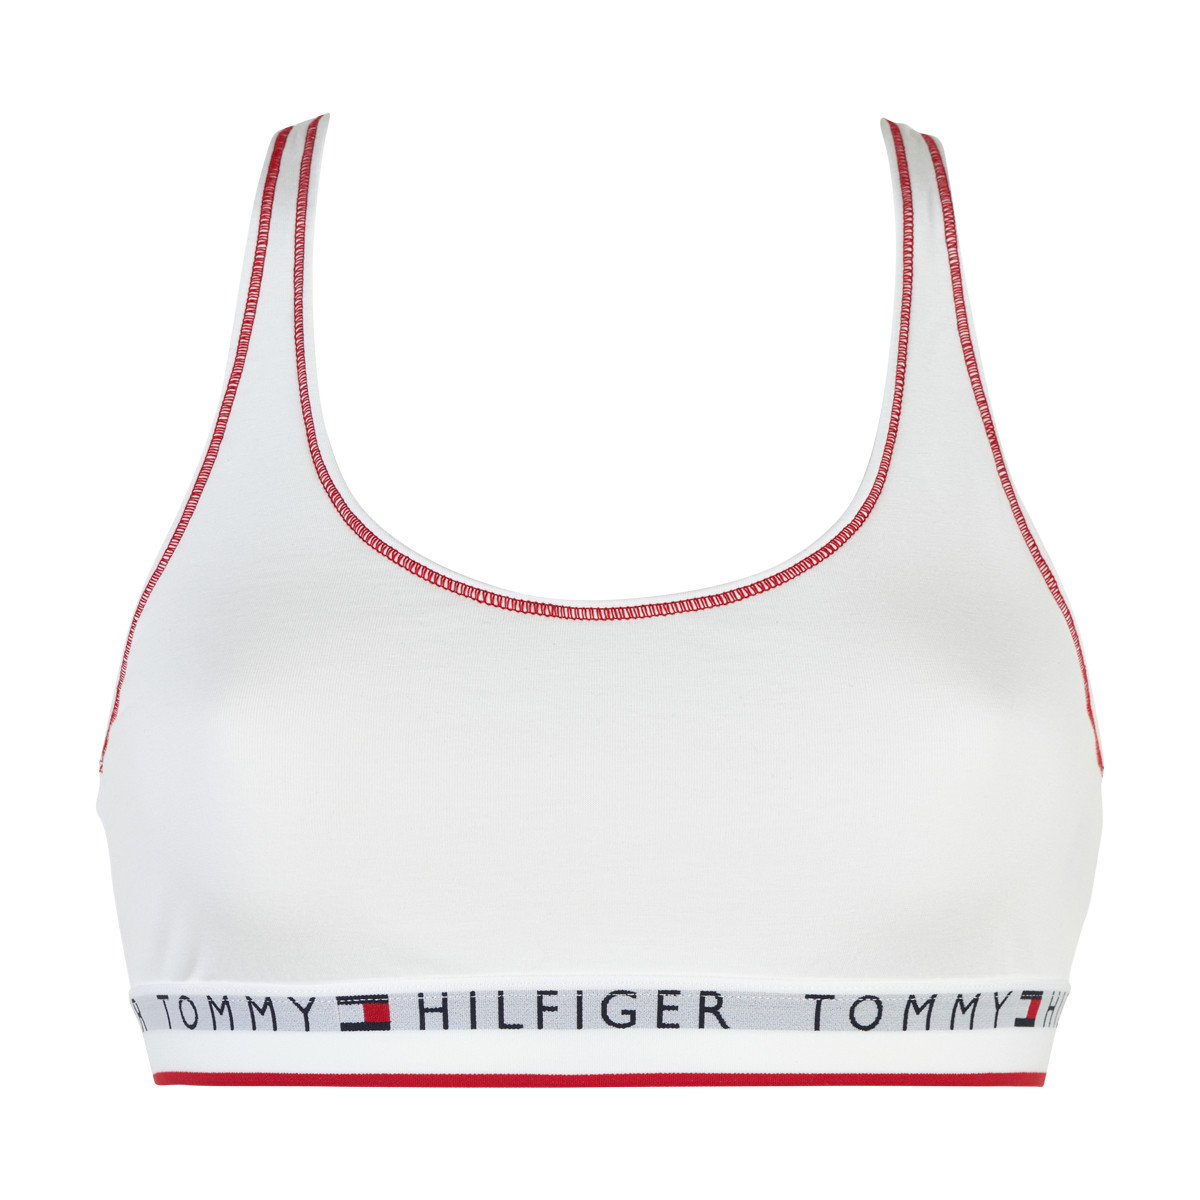 Tommy Hilfiger Lingeri Bralette Bikini Top, Farve: Hvid, Størrelse: S, Dame